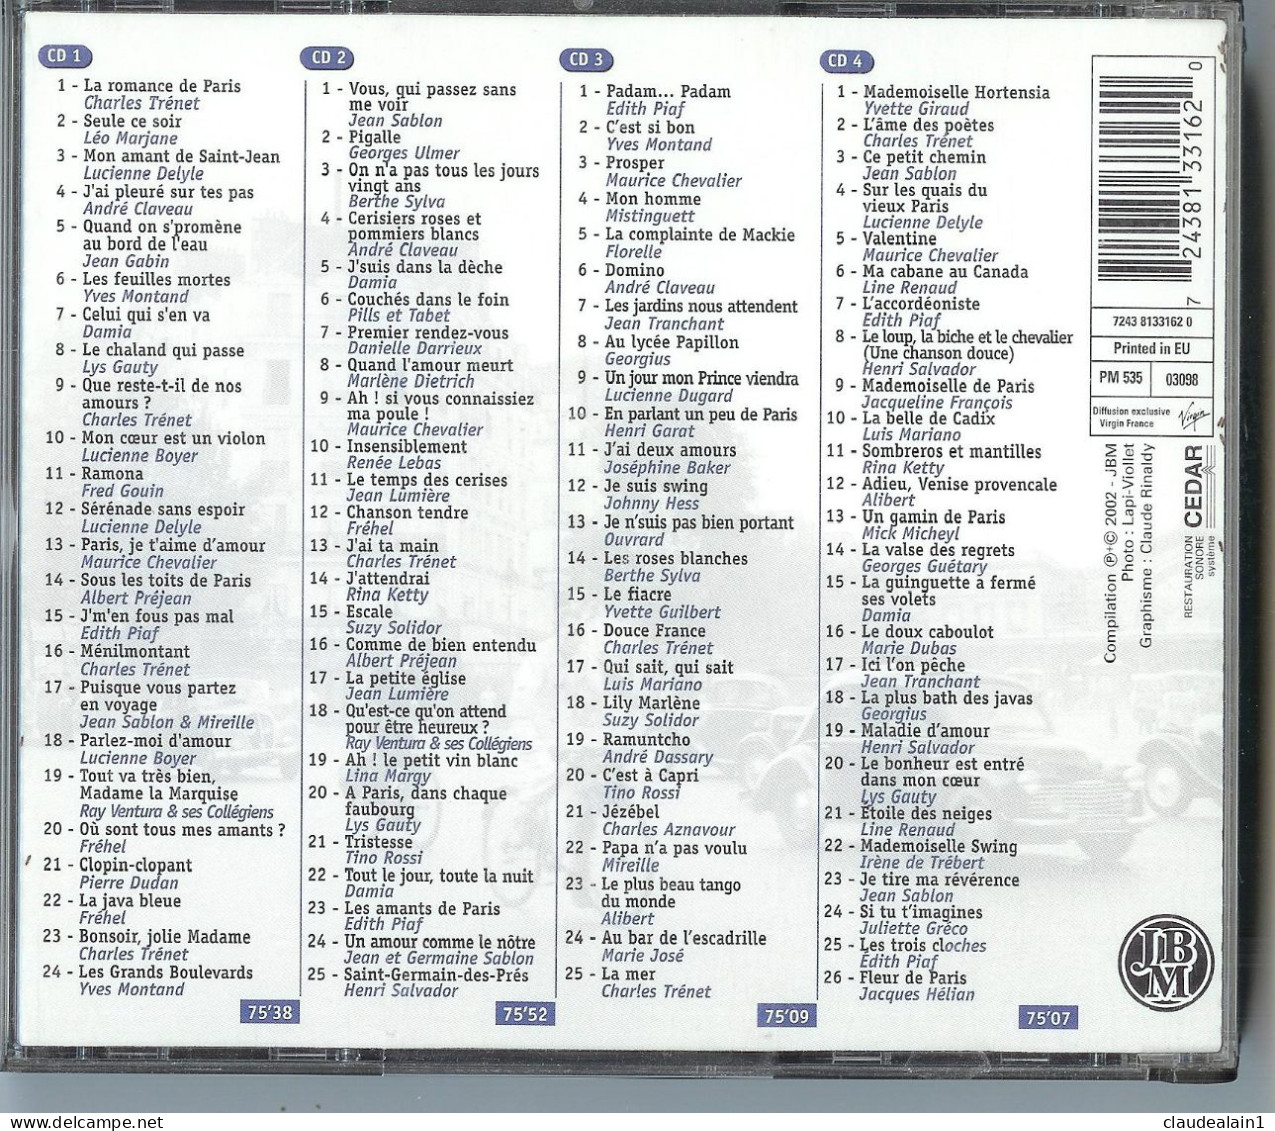 ALBUM CD 100 Chansons Françaises De Légende (4 CD & 100 Titres) - Très Bon état - Otros - Canción Francesa